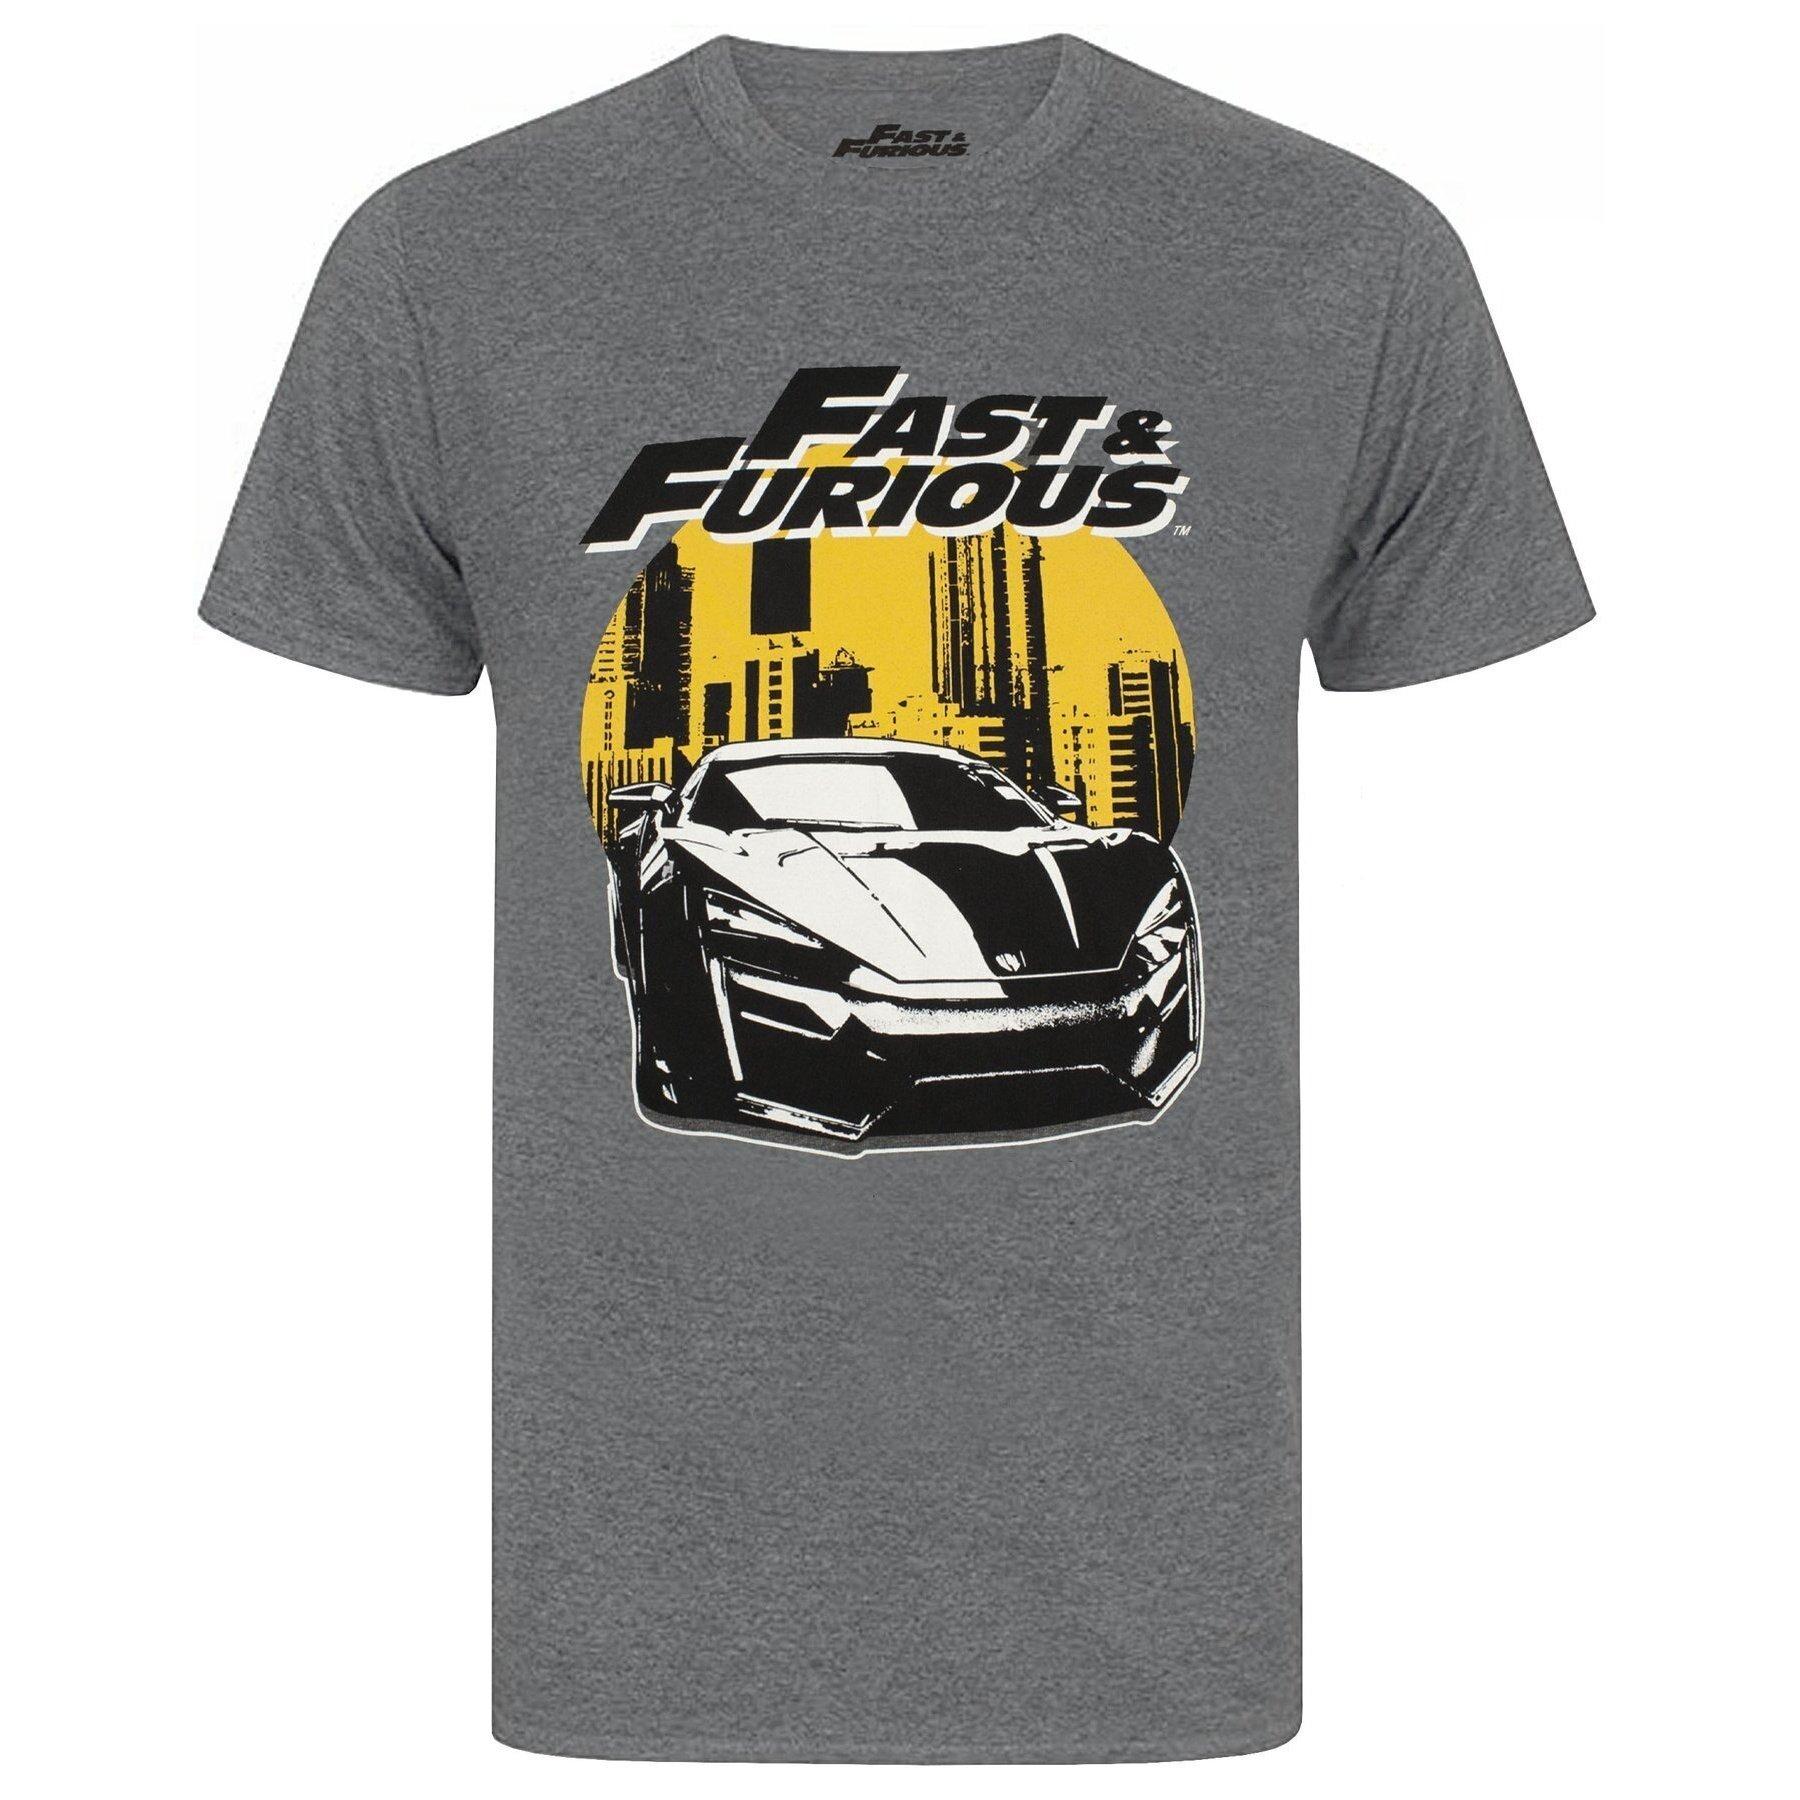 Tshirt Herren Charcoal Black XL von Fast & Furious